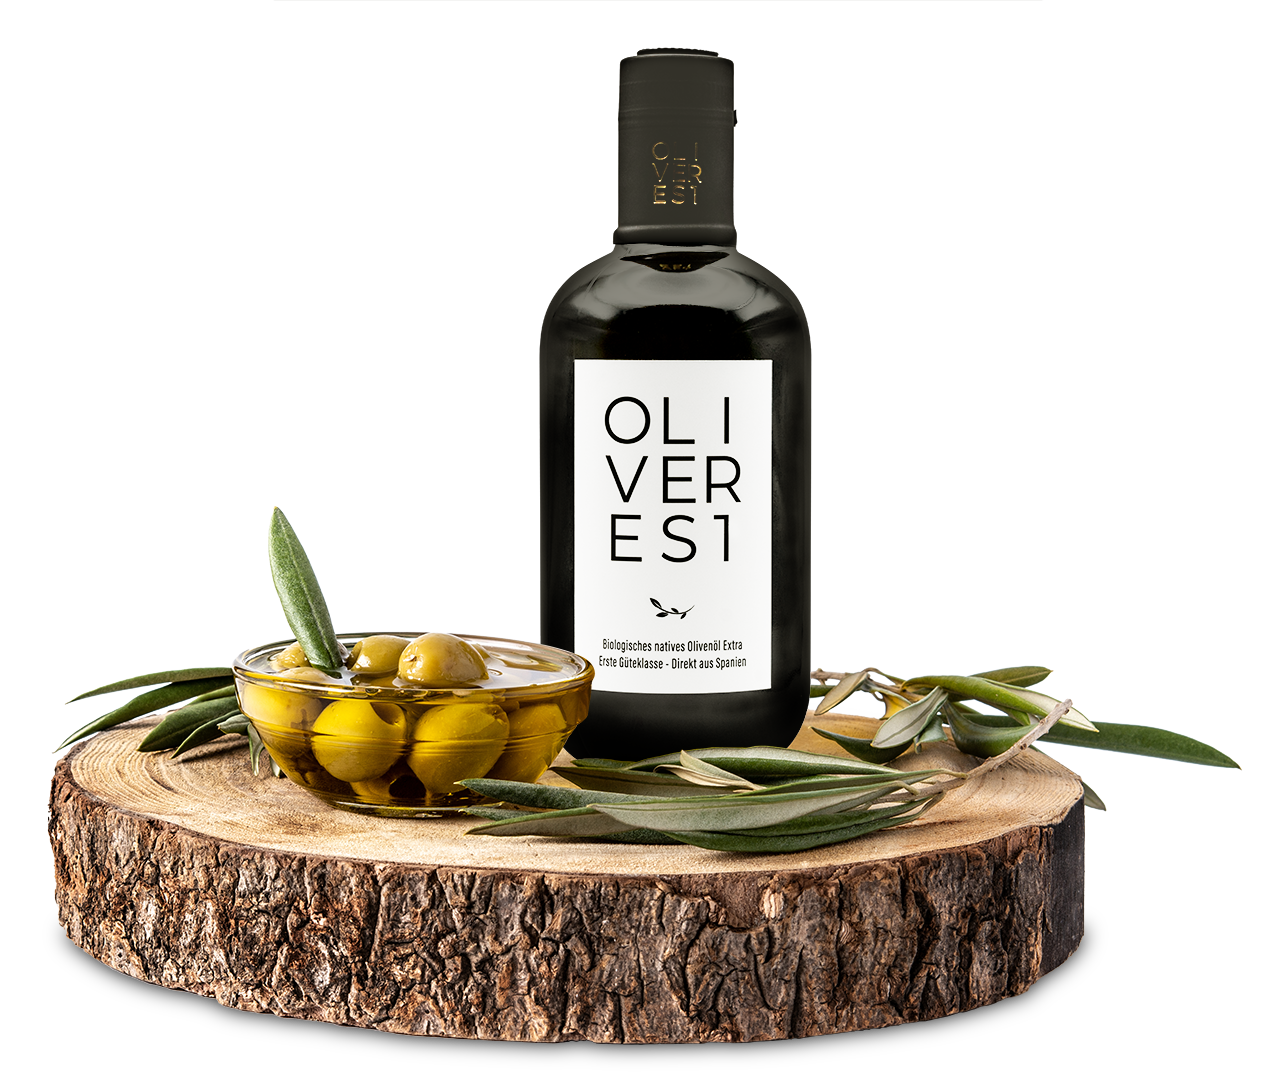 Oliveres1 Olivenflasche auf einer Scheibholz mit Oliven und Olivenblättern.